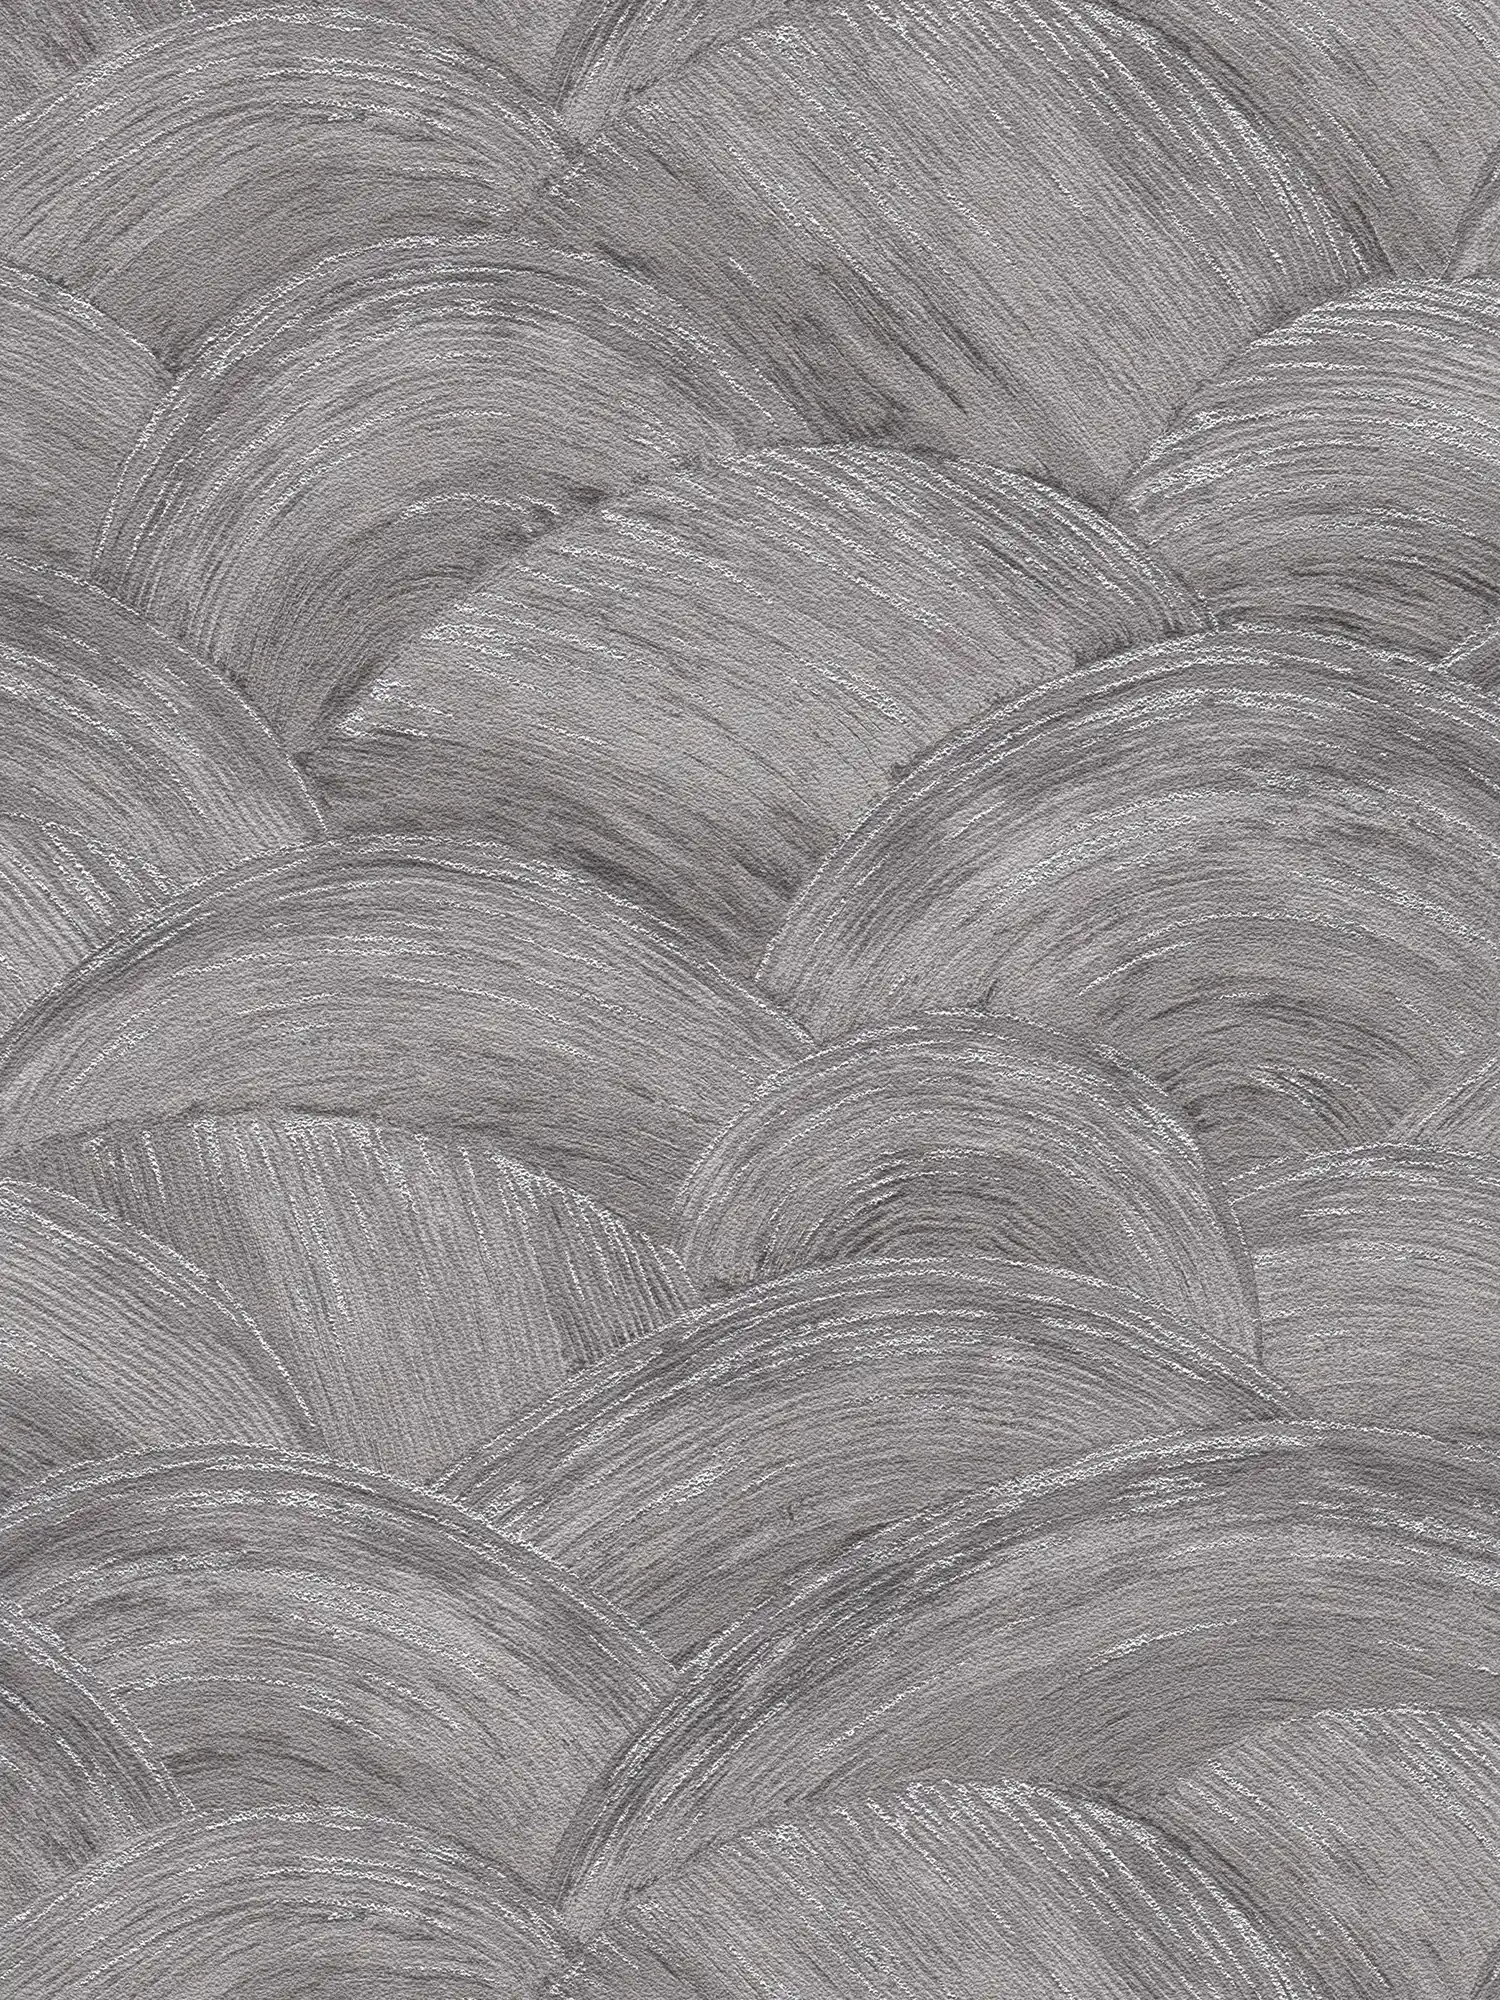             Vliesbehang met golvende veeguitstraling & glanseffect - grijs, zilver
        